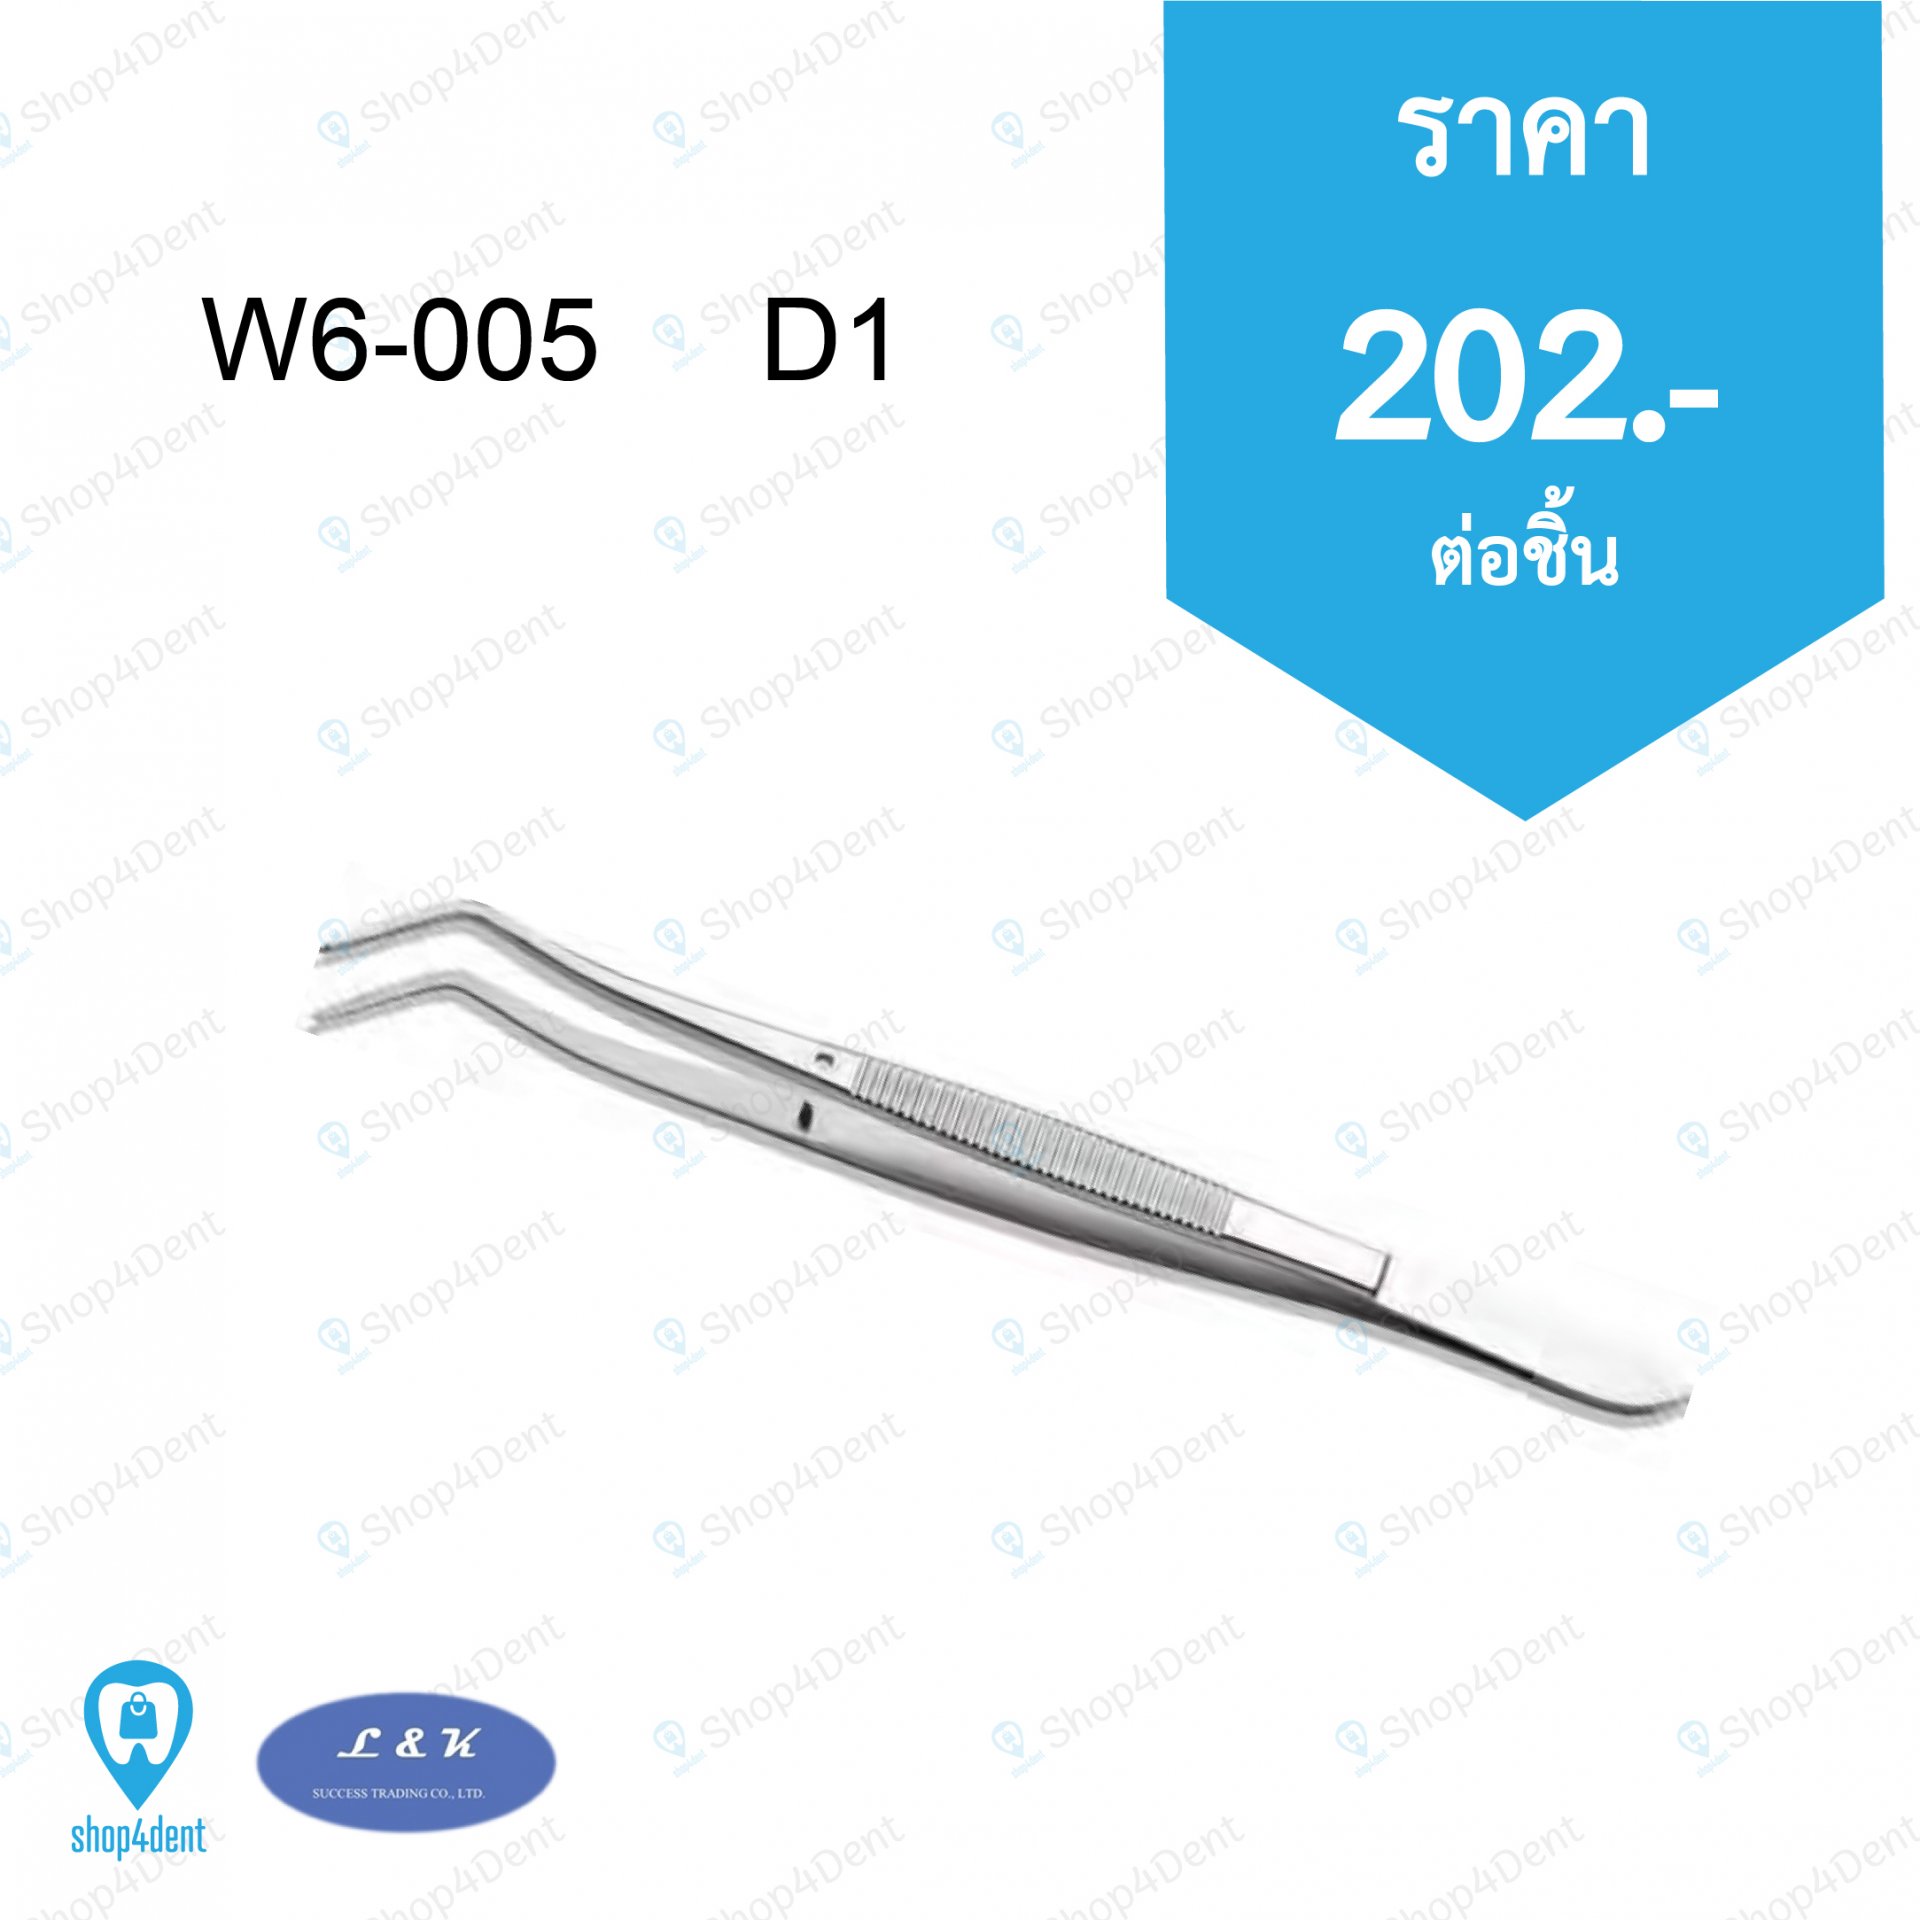 Tweezers W6-005 D1